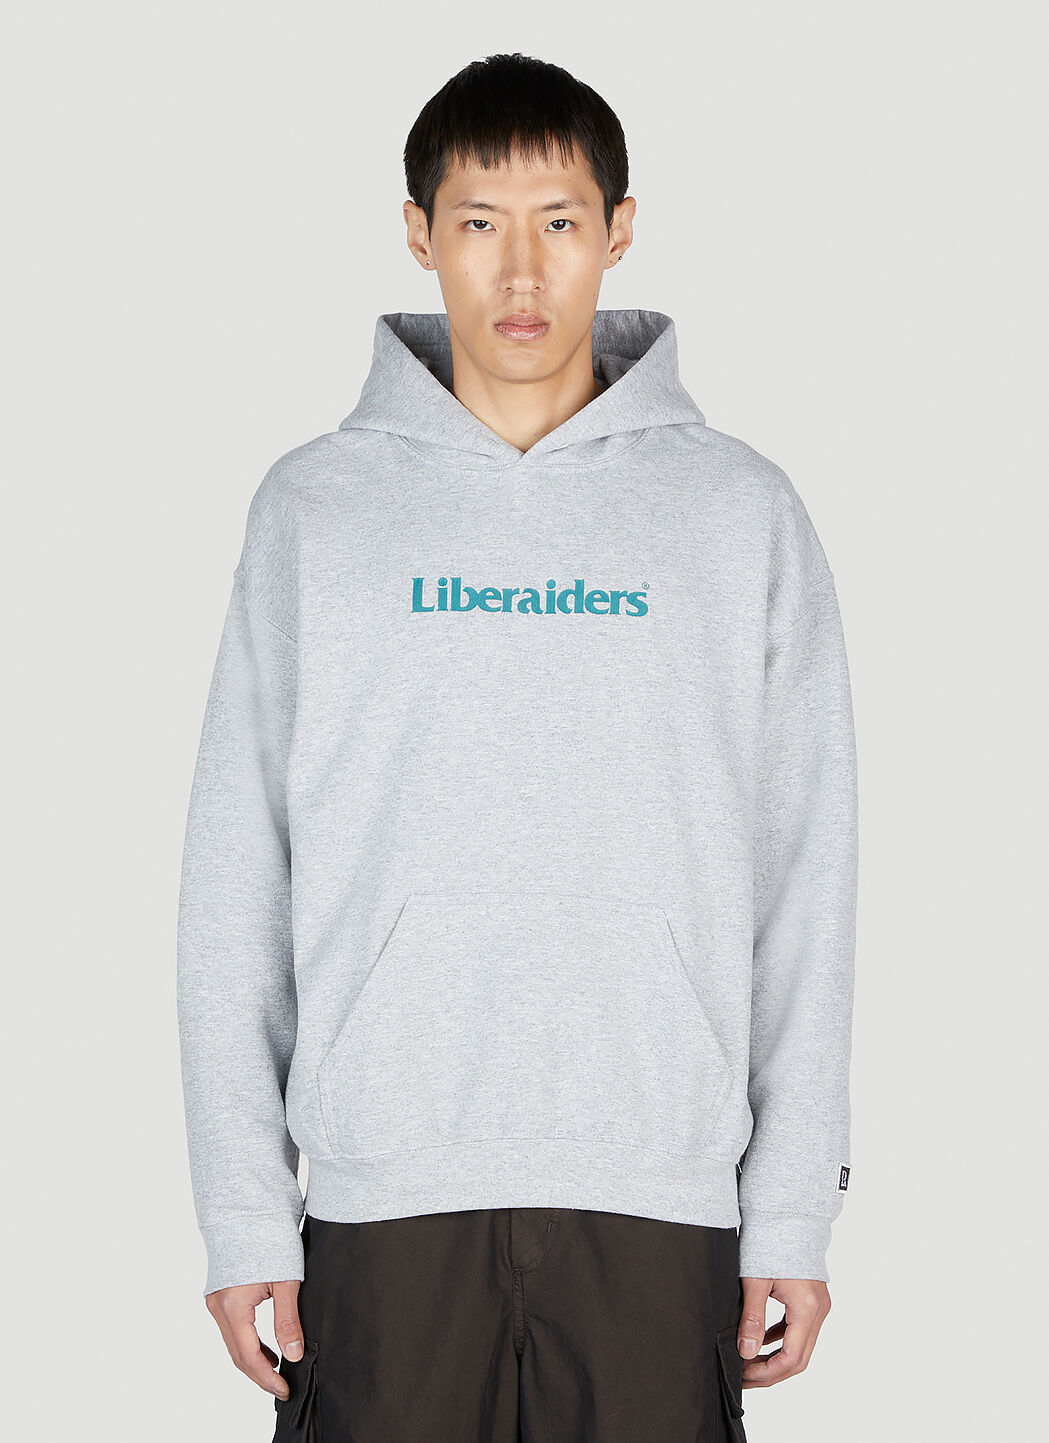 Liberaiders Logo Hooded Sweatshirt Black lib0148007